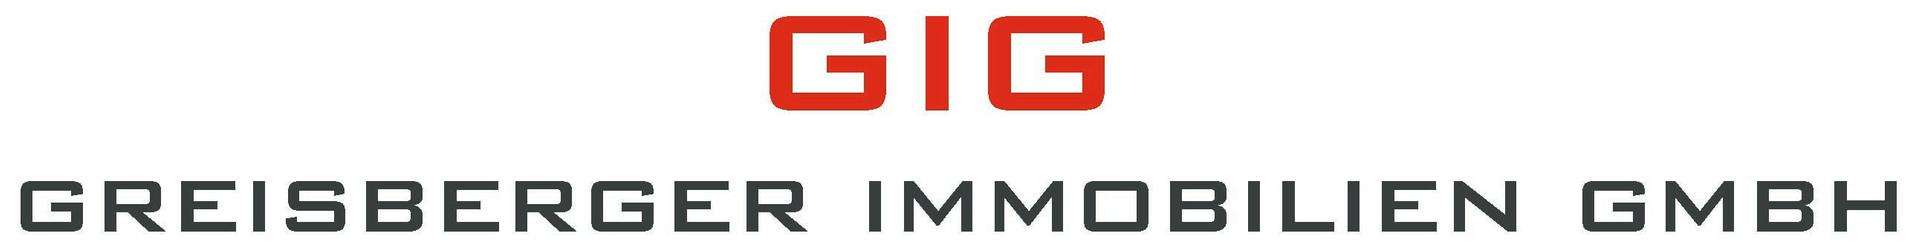 Makler GIG - Greisberger Immobilien GmbH logo